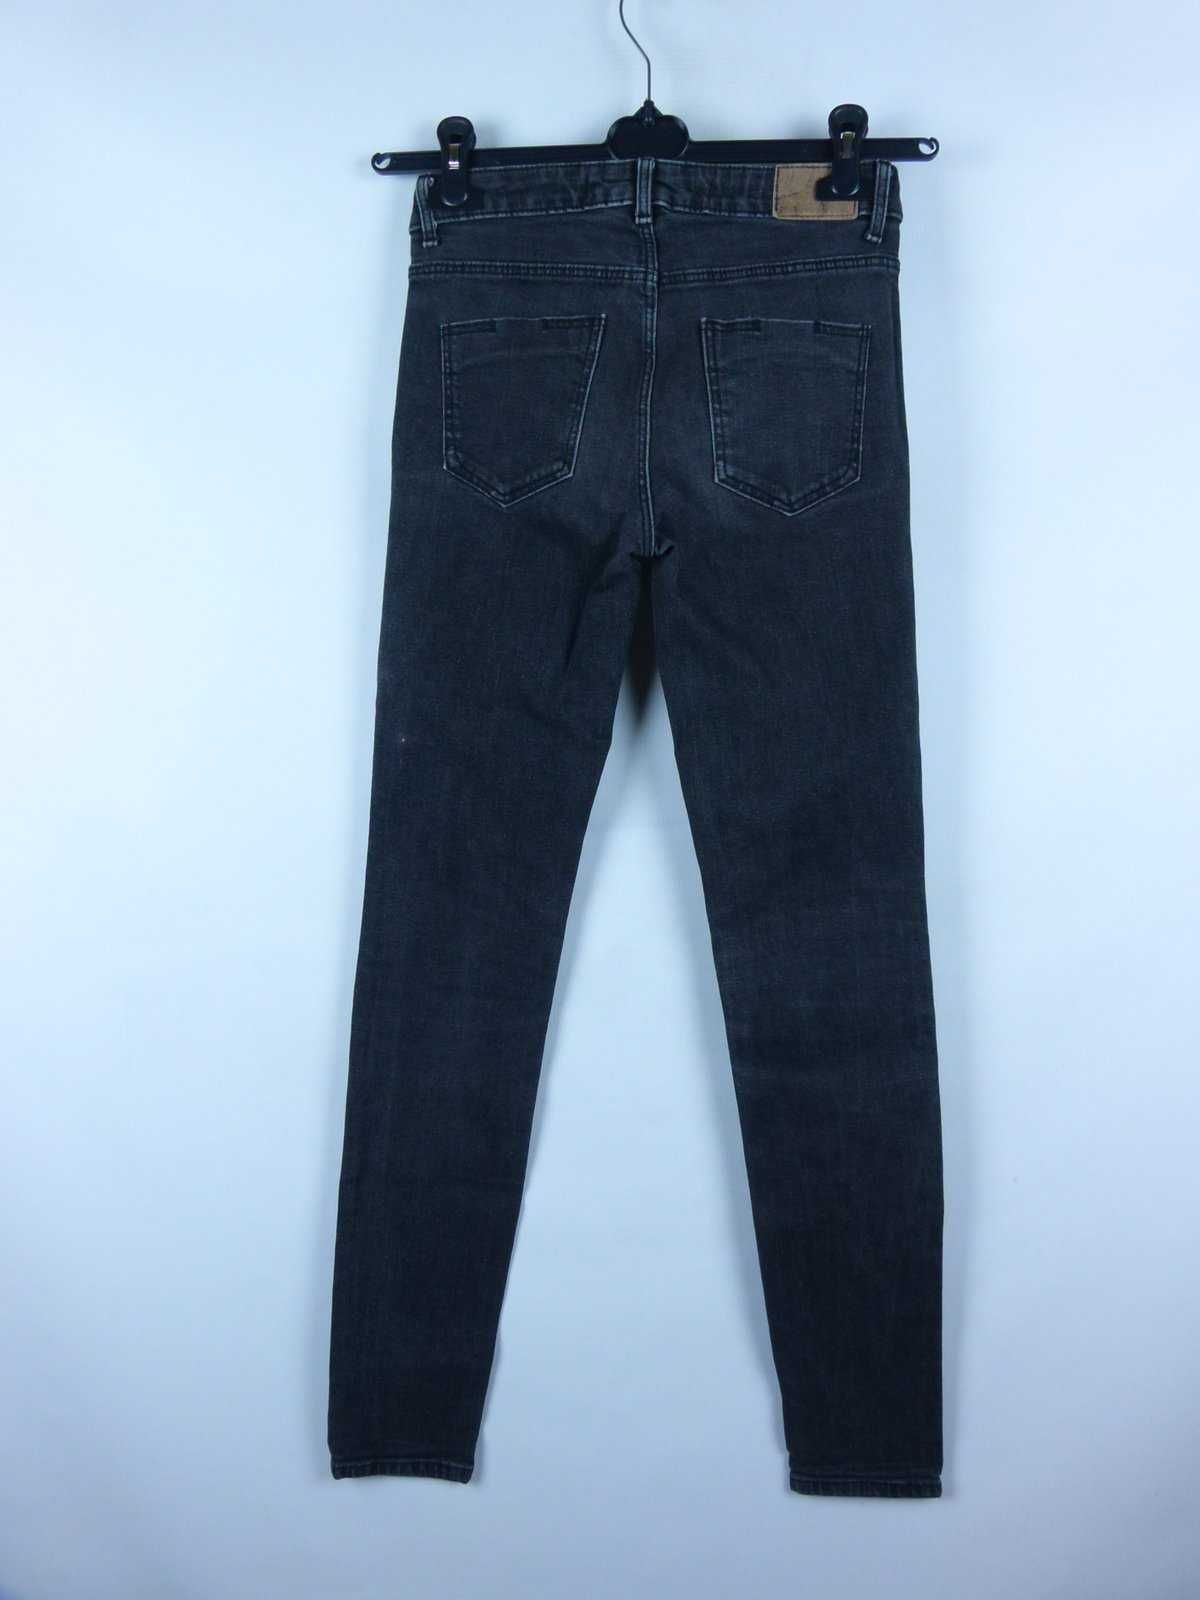 Zara spodnie dżins slim jeans / 34